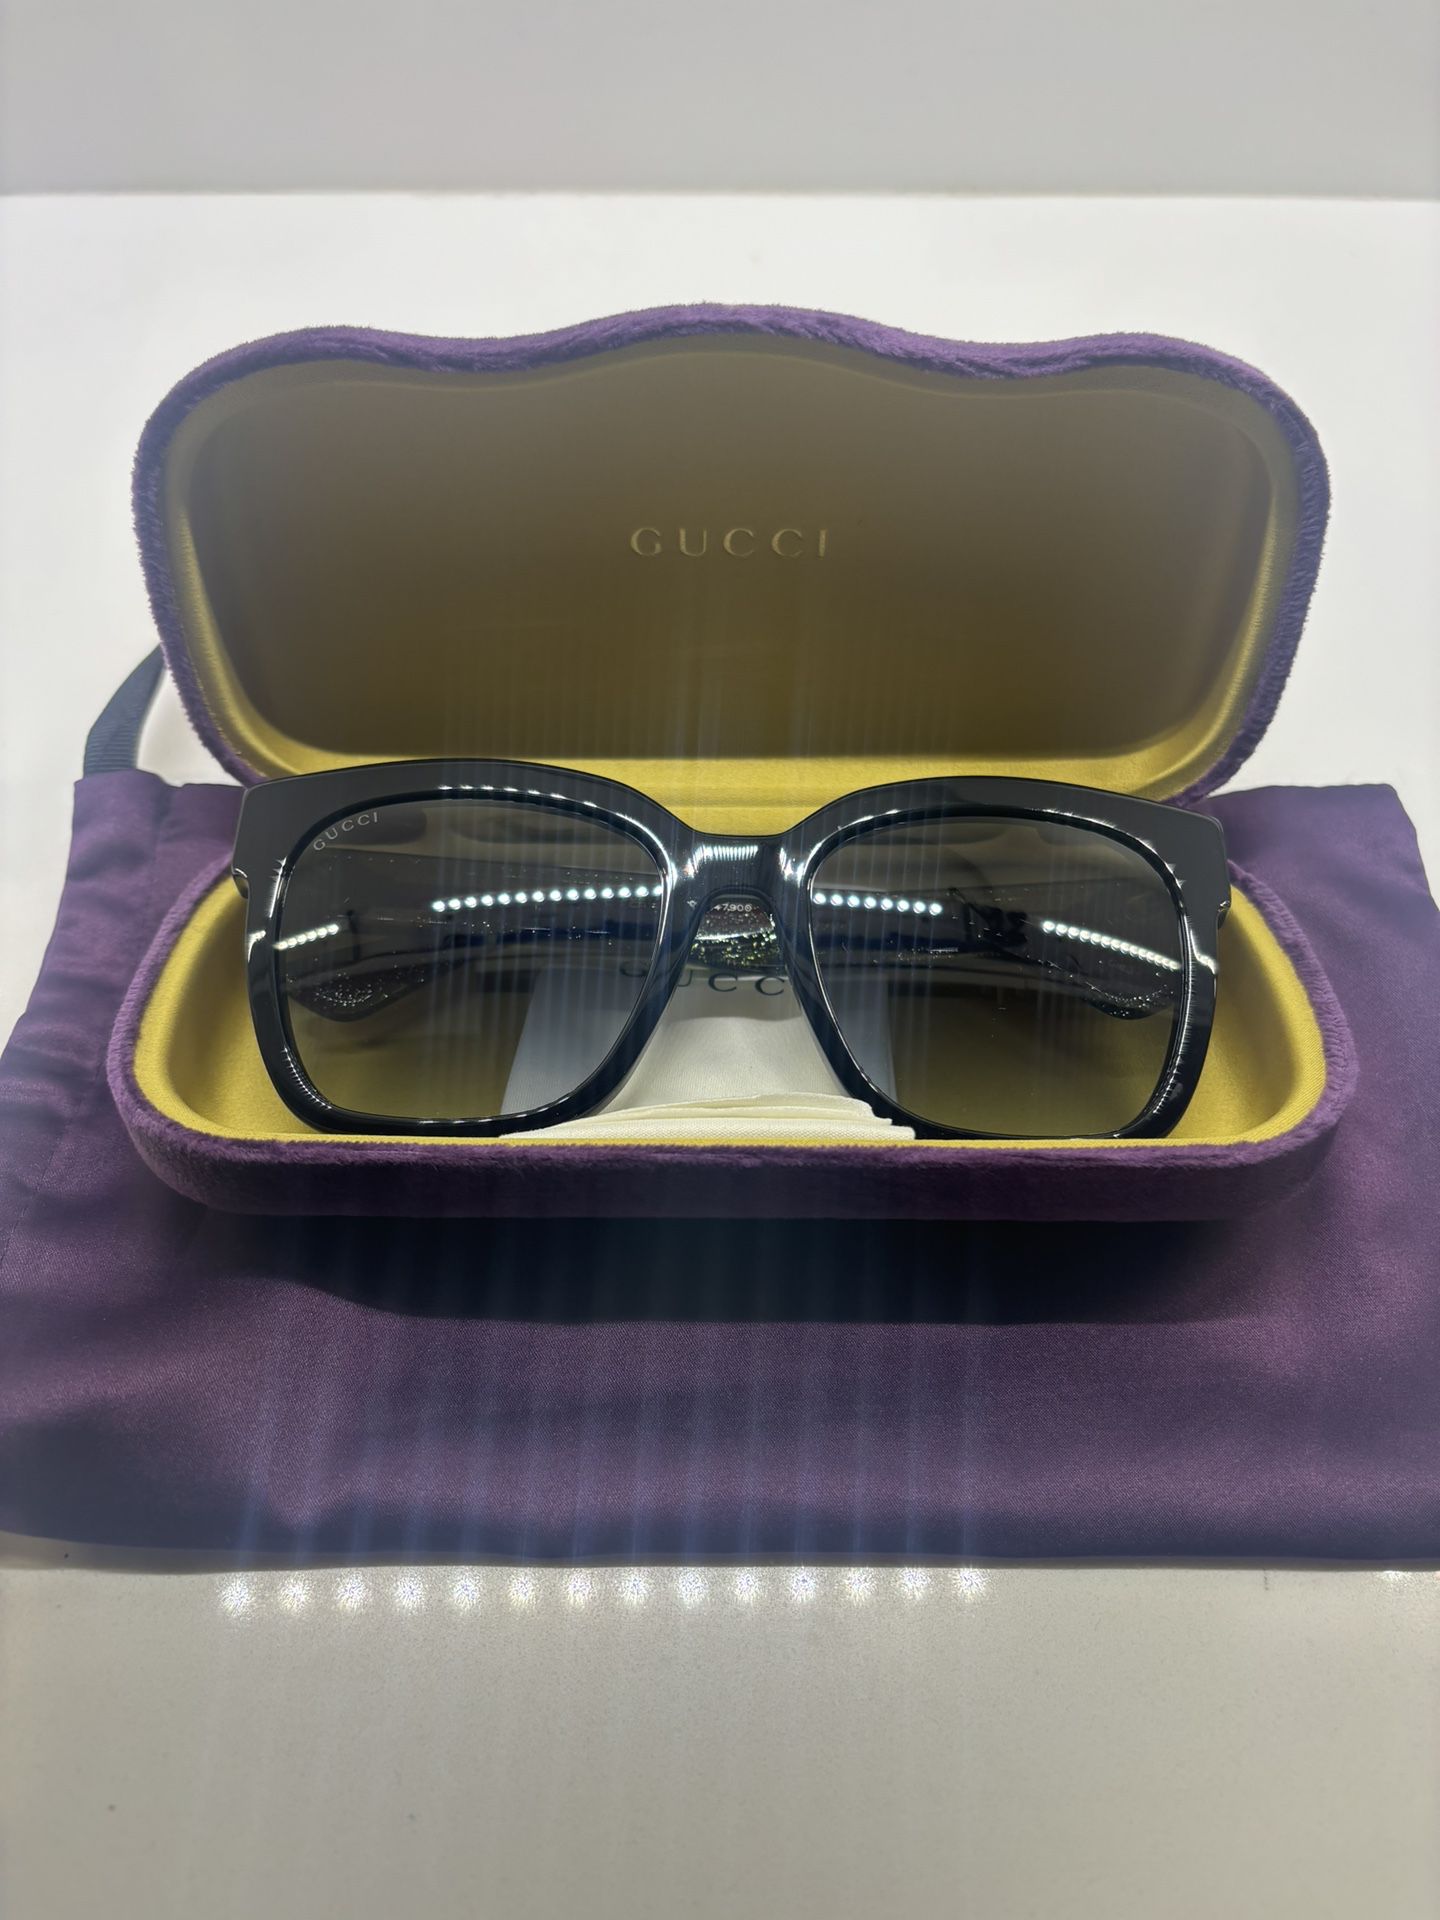 New Gucci Woman’s Sunglasses 